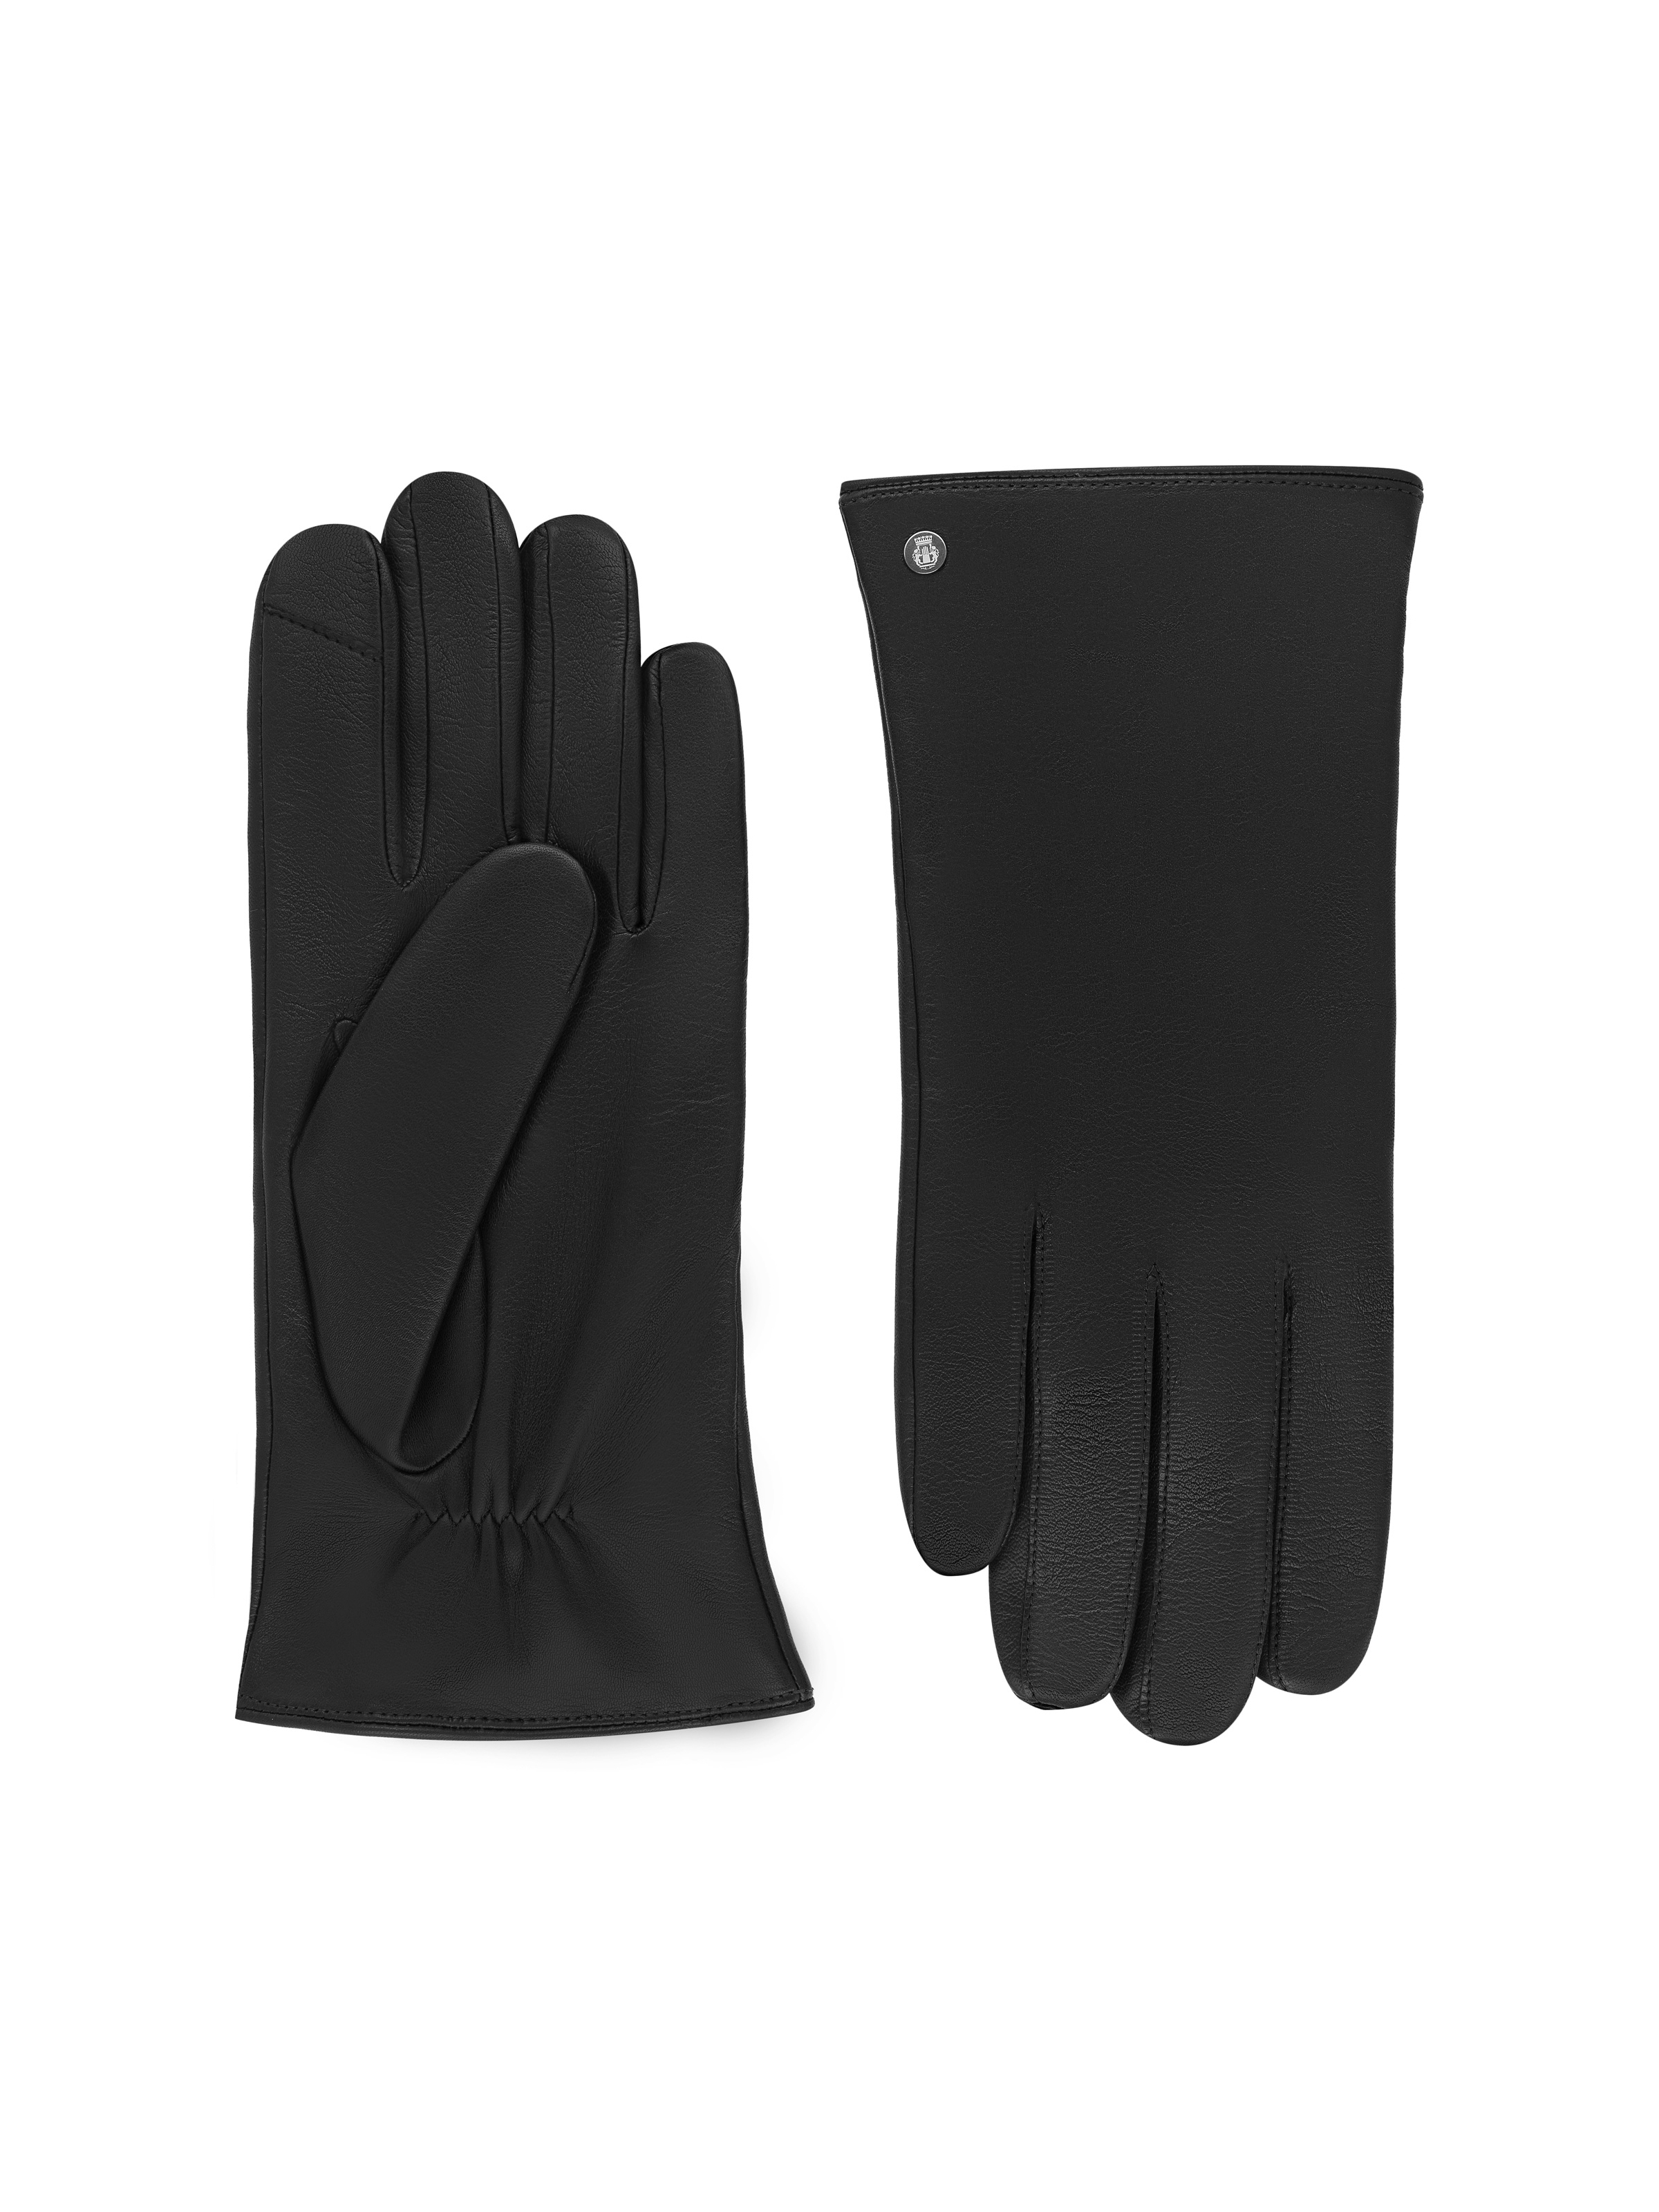 Schwarzer Handschuh aus Leder mit Touch-Funktion